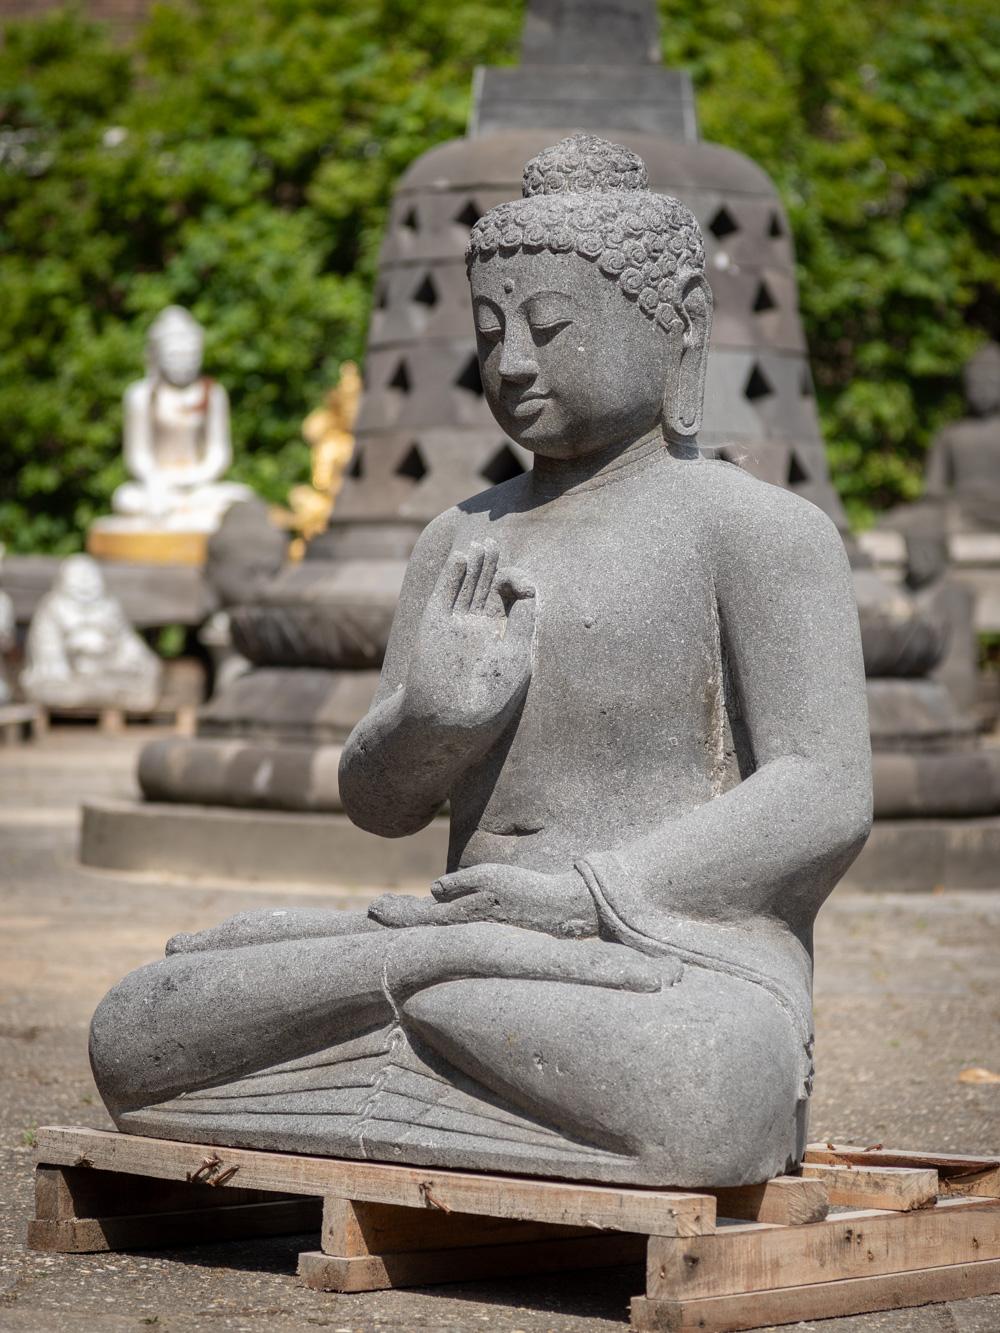 La grande statue de Bouddha en lavastone d'Indonésie est un remarquable témoignage de l'habileté artistique et de la représentation spirituelle. Sculptée à la main dans un seul bloc de lavastone, cette statue atteint une hauteur impressionnante de